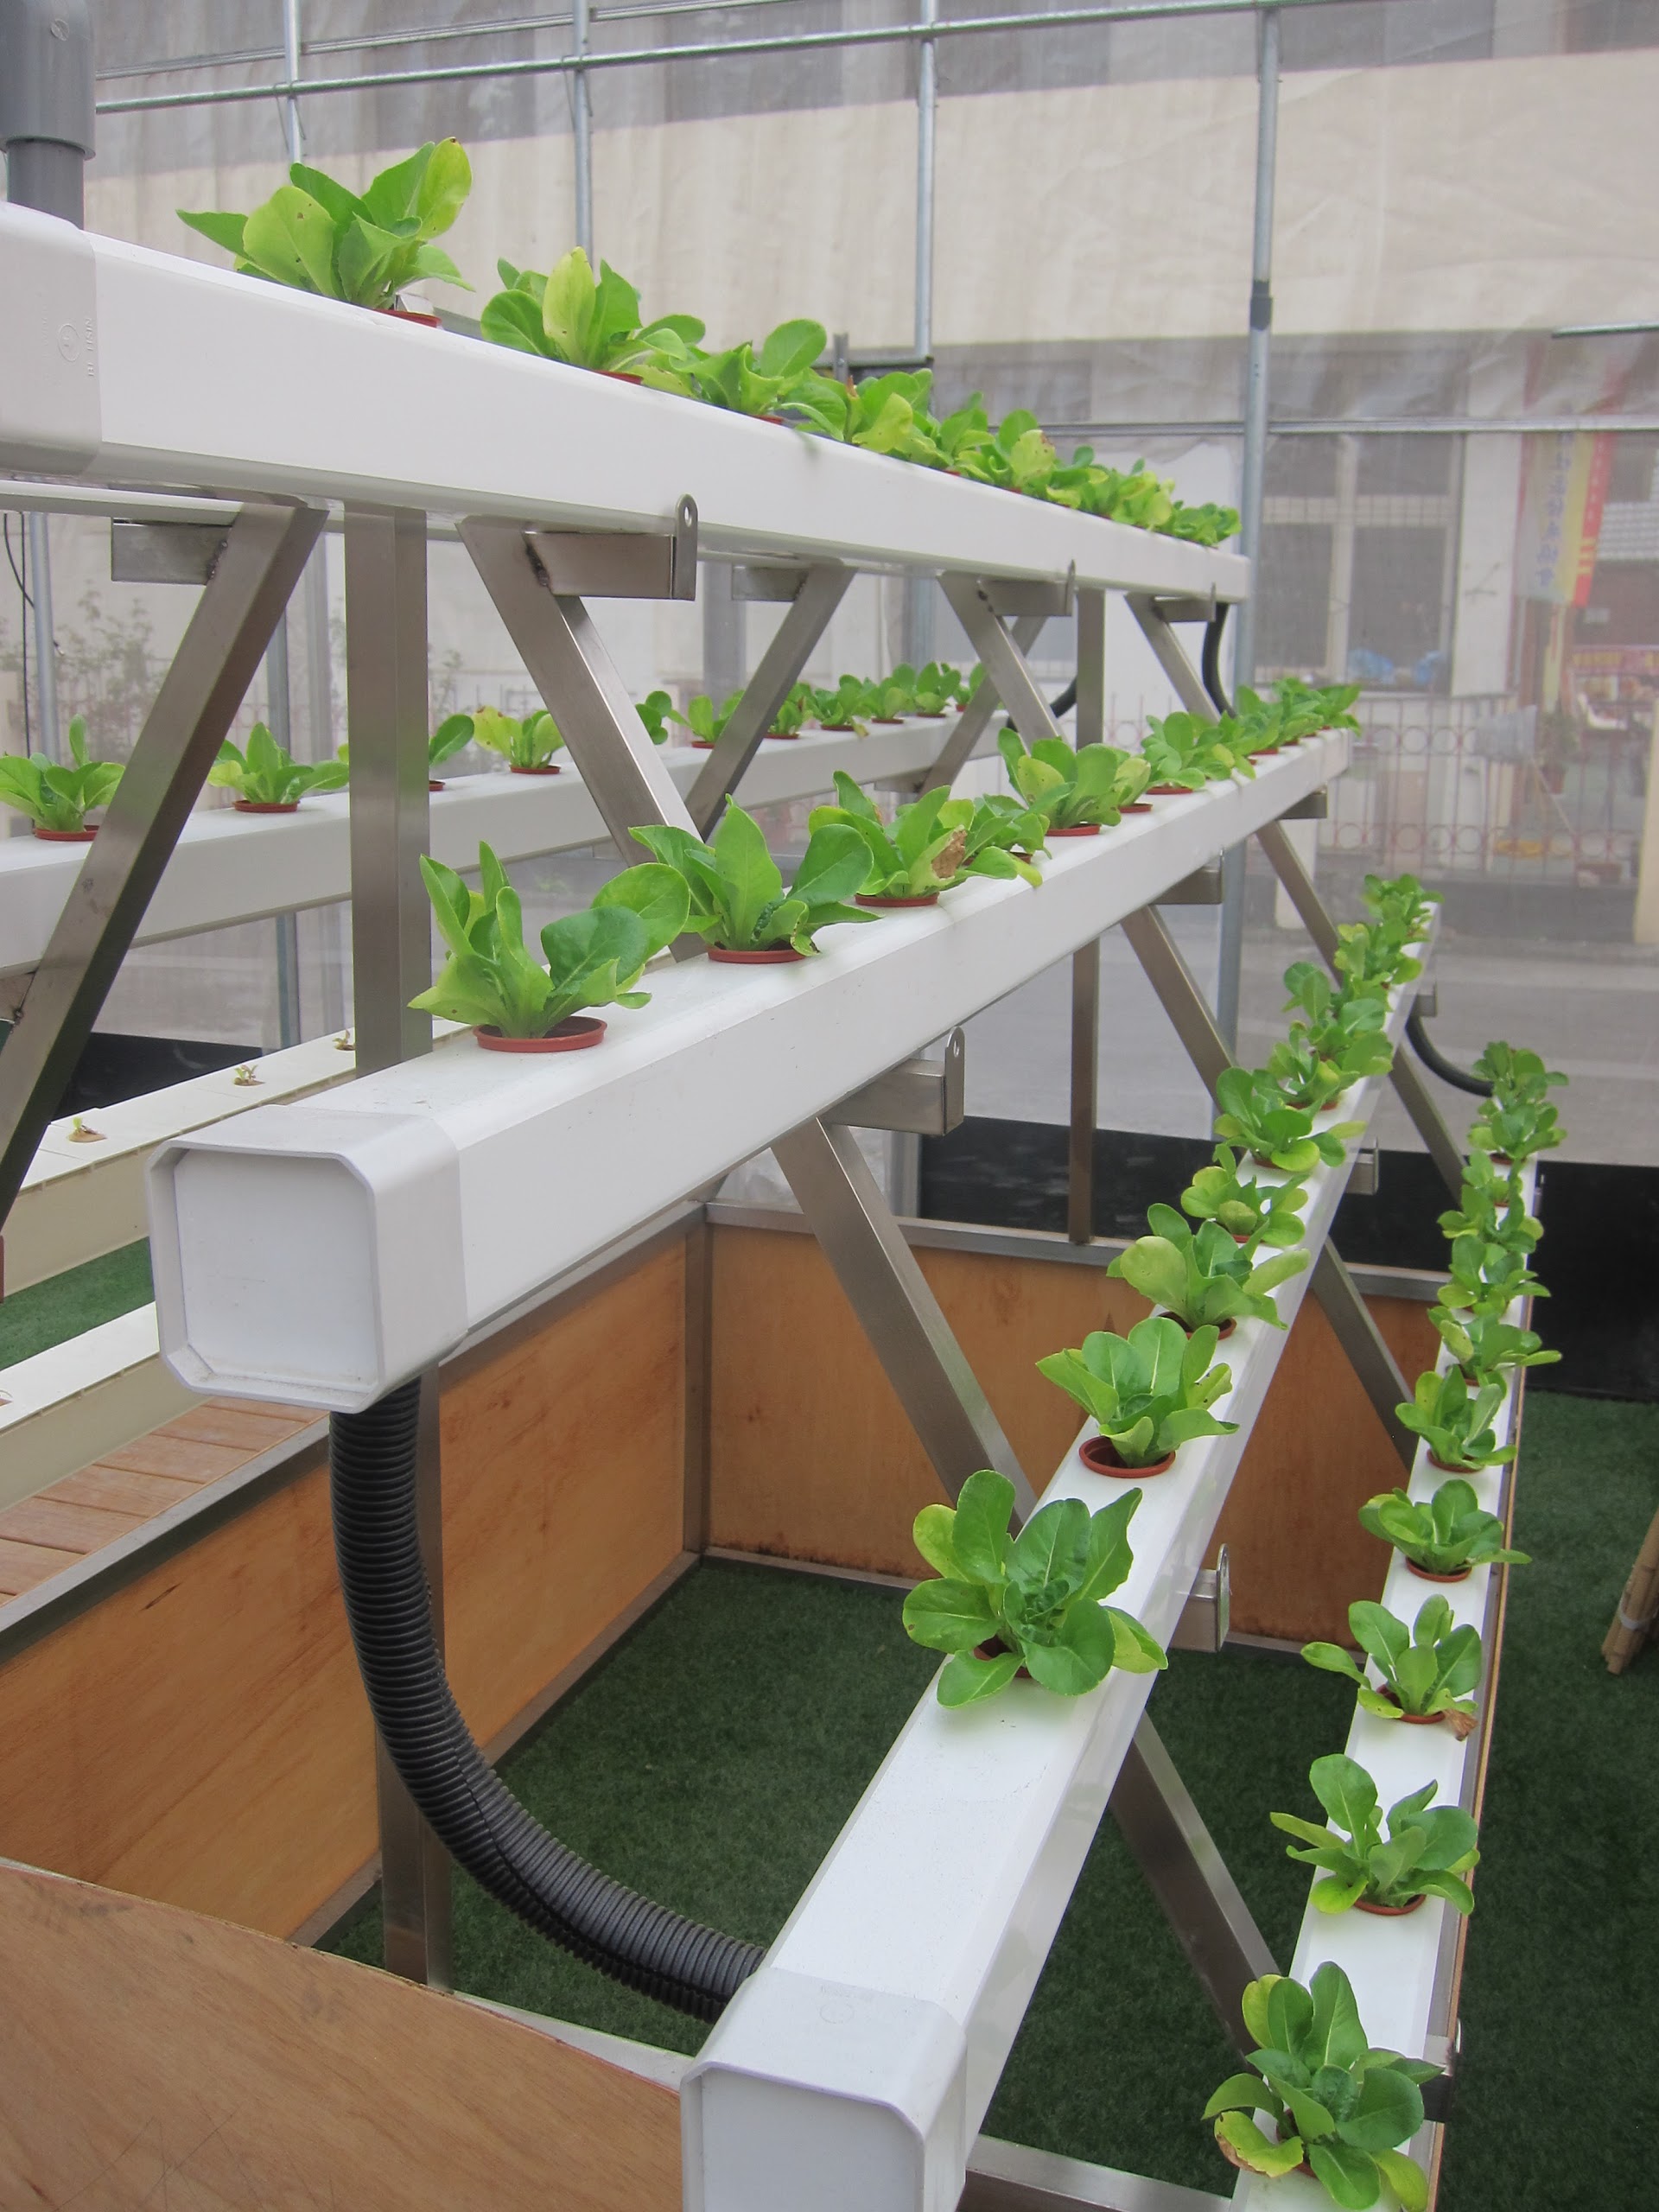 城田魚菜共生農場 有機蔬菜 屋頂綠化 可食景觀